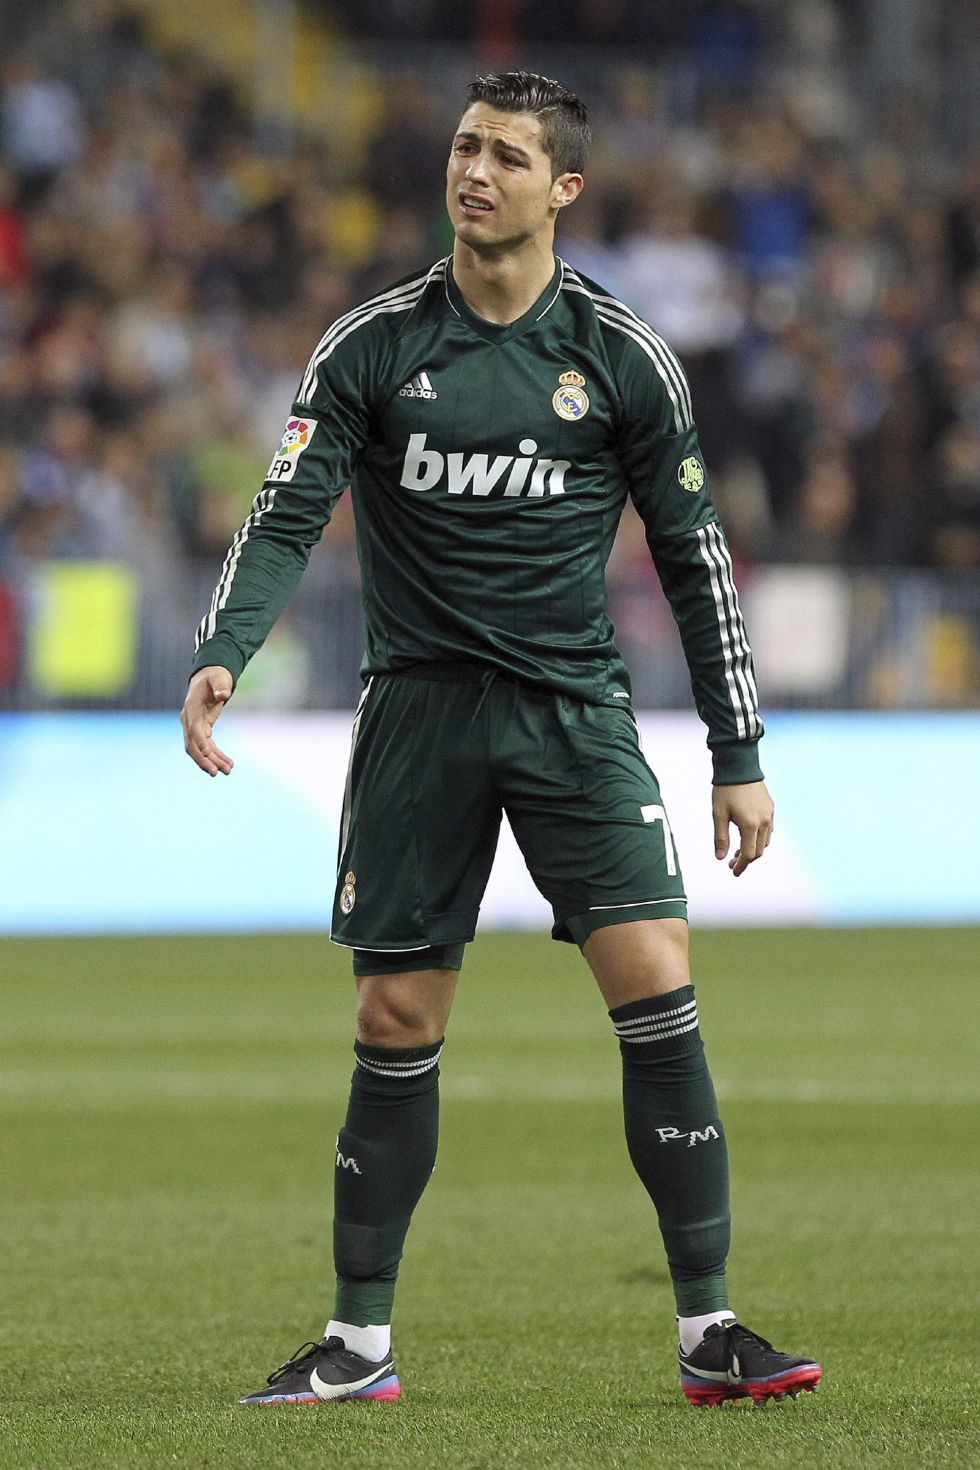 The Sun: Cristiano podría forzar su salida del Madrid en verano